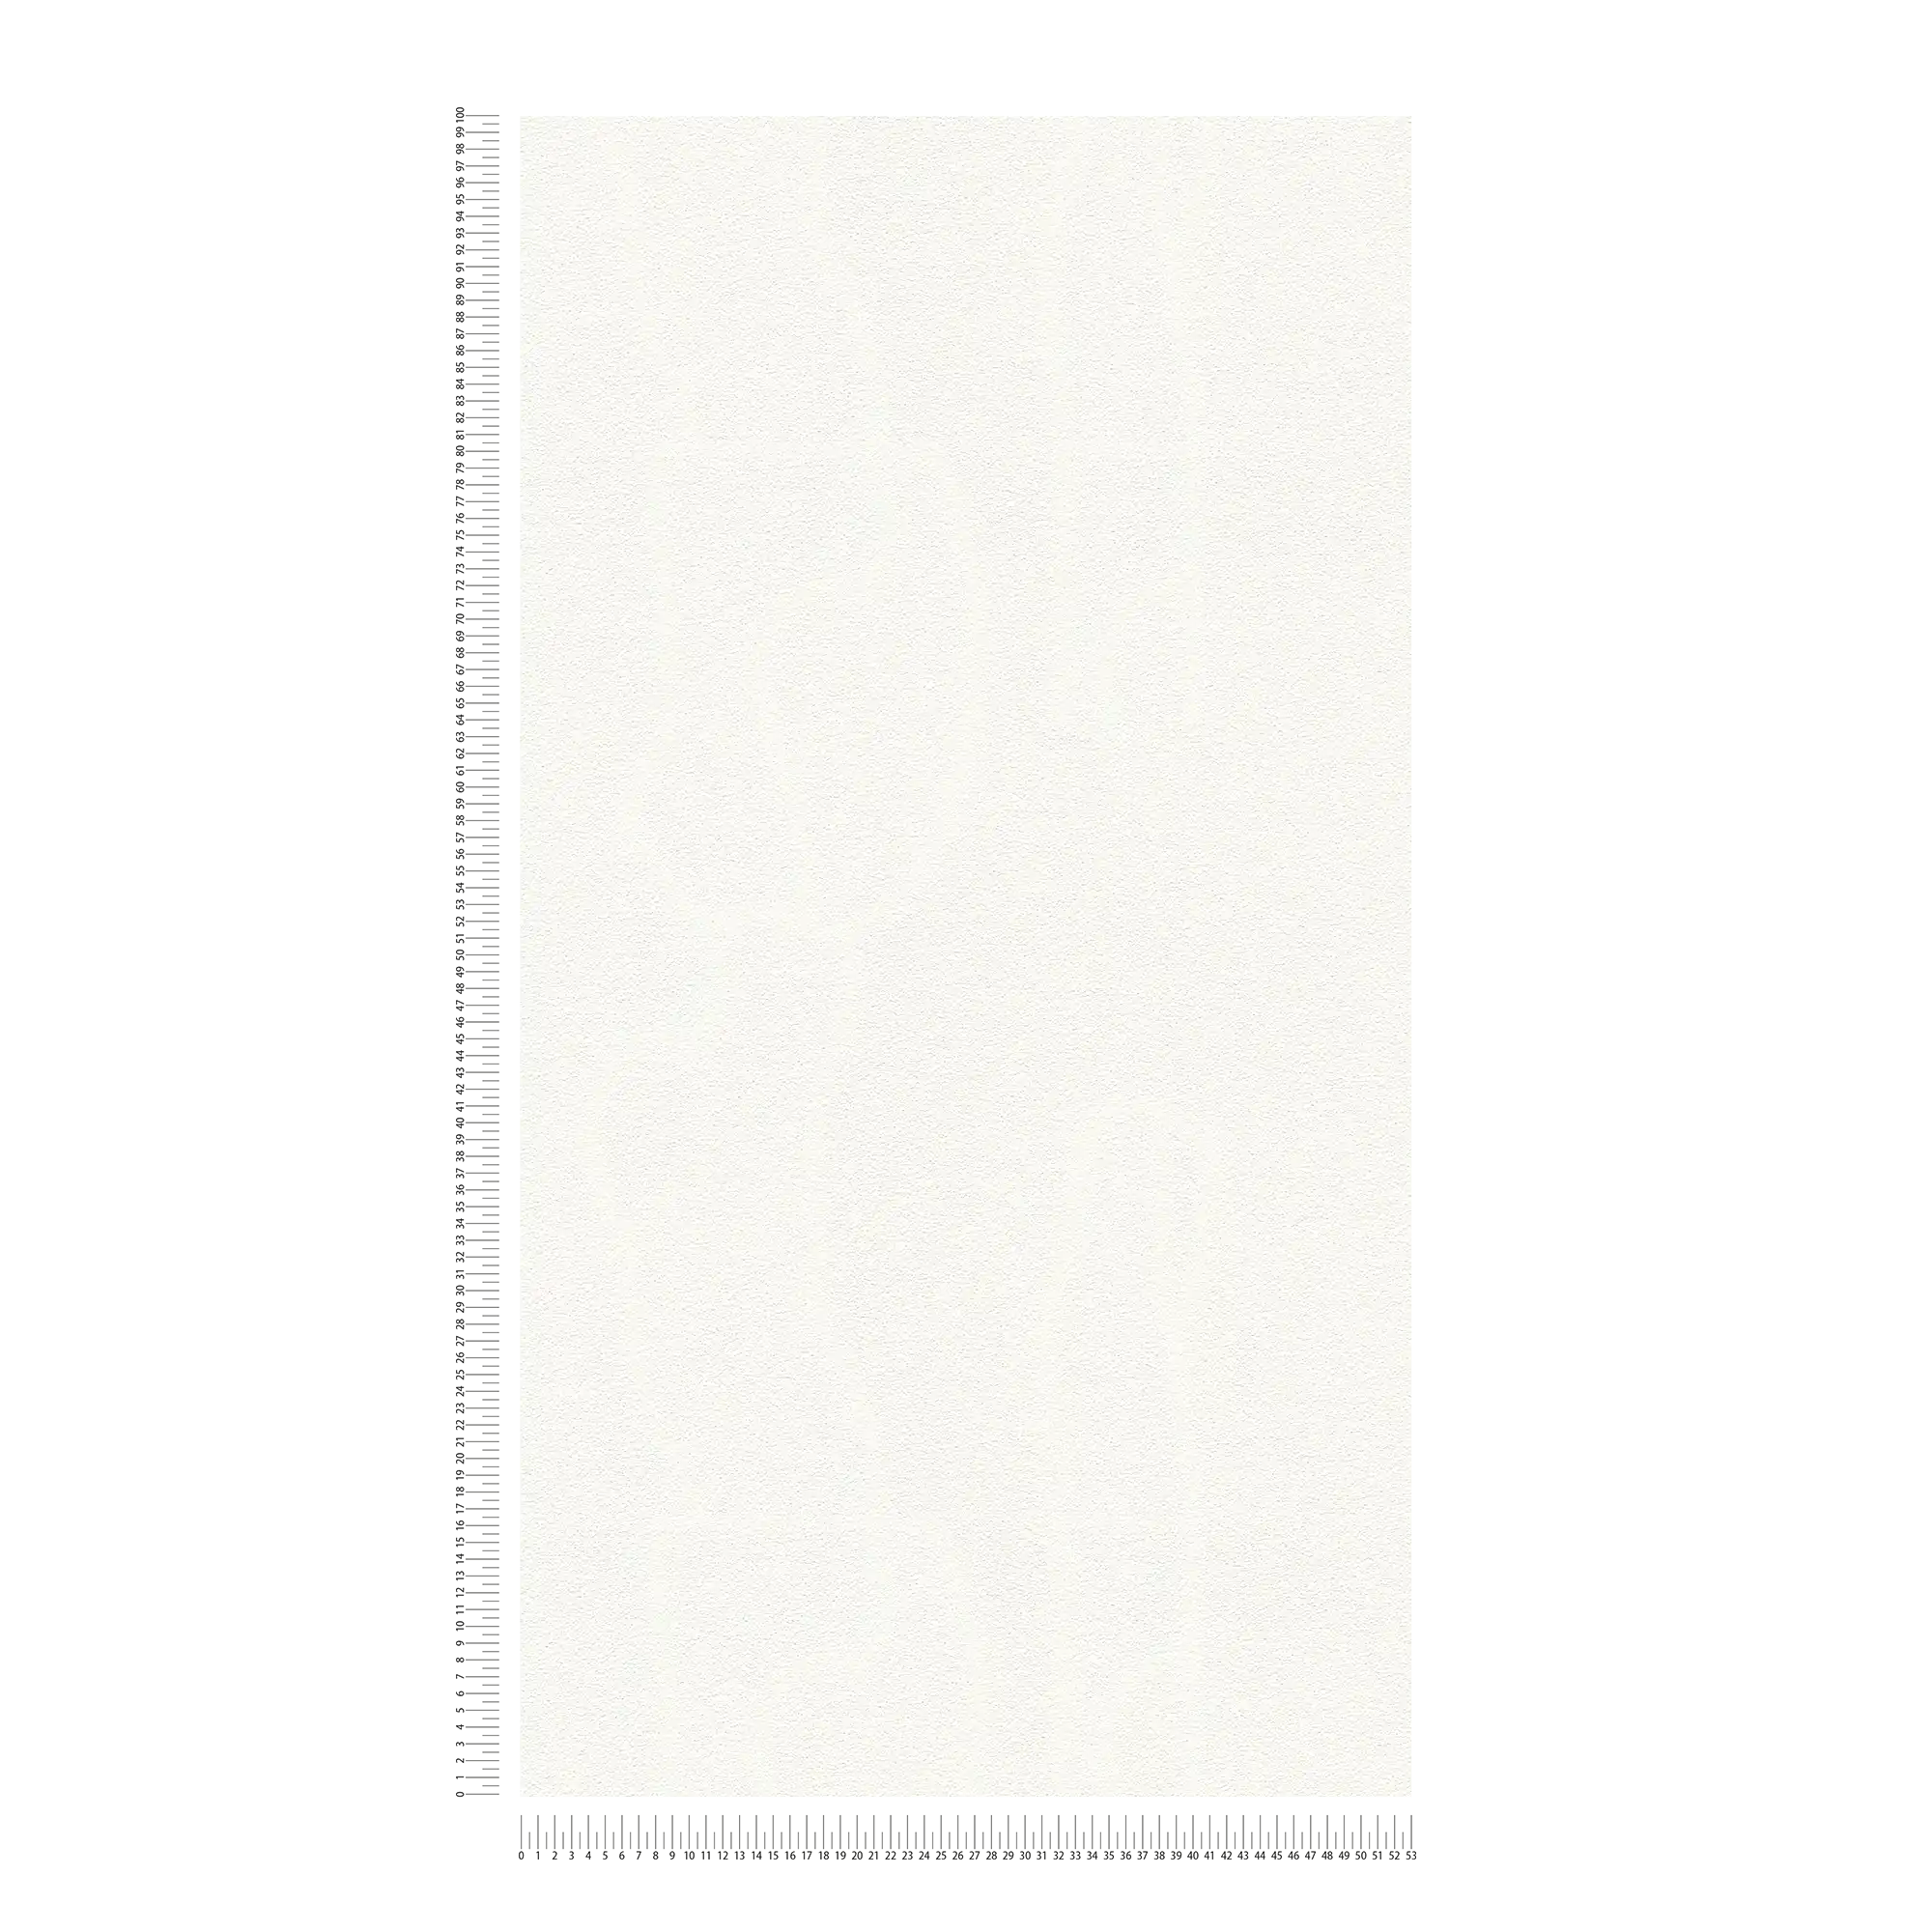             Unifarbene Tapete Weiß mit flächiger Schaumstruktur
        